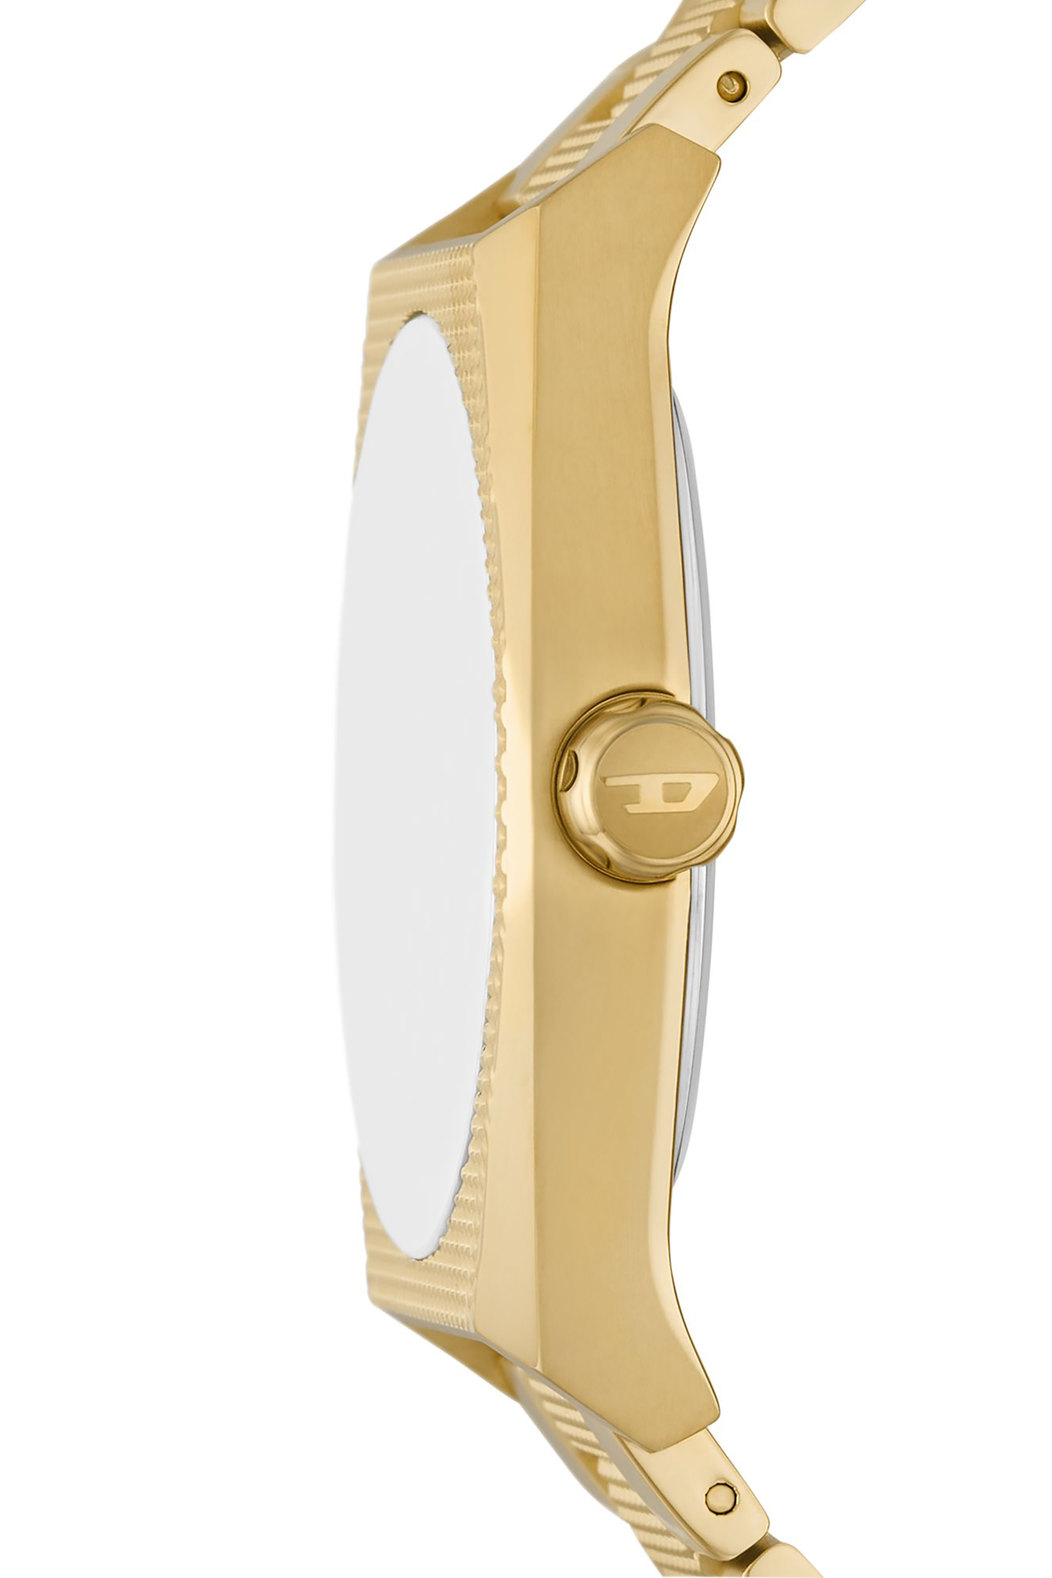 Diesel Scraper Three-Hand Gold-Tone Stainless Steel Watch